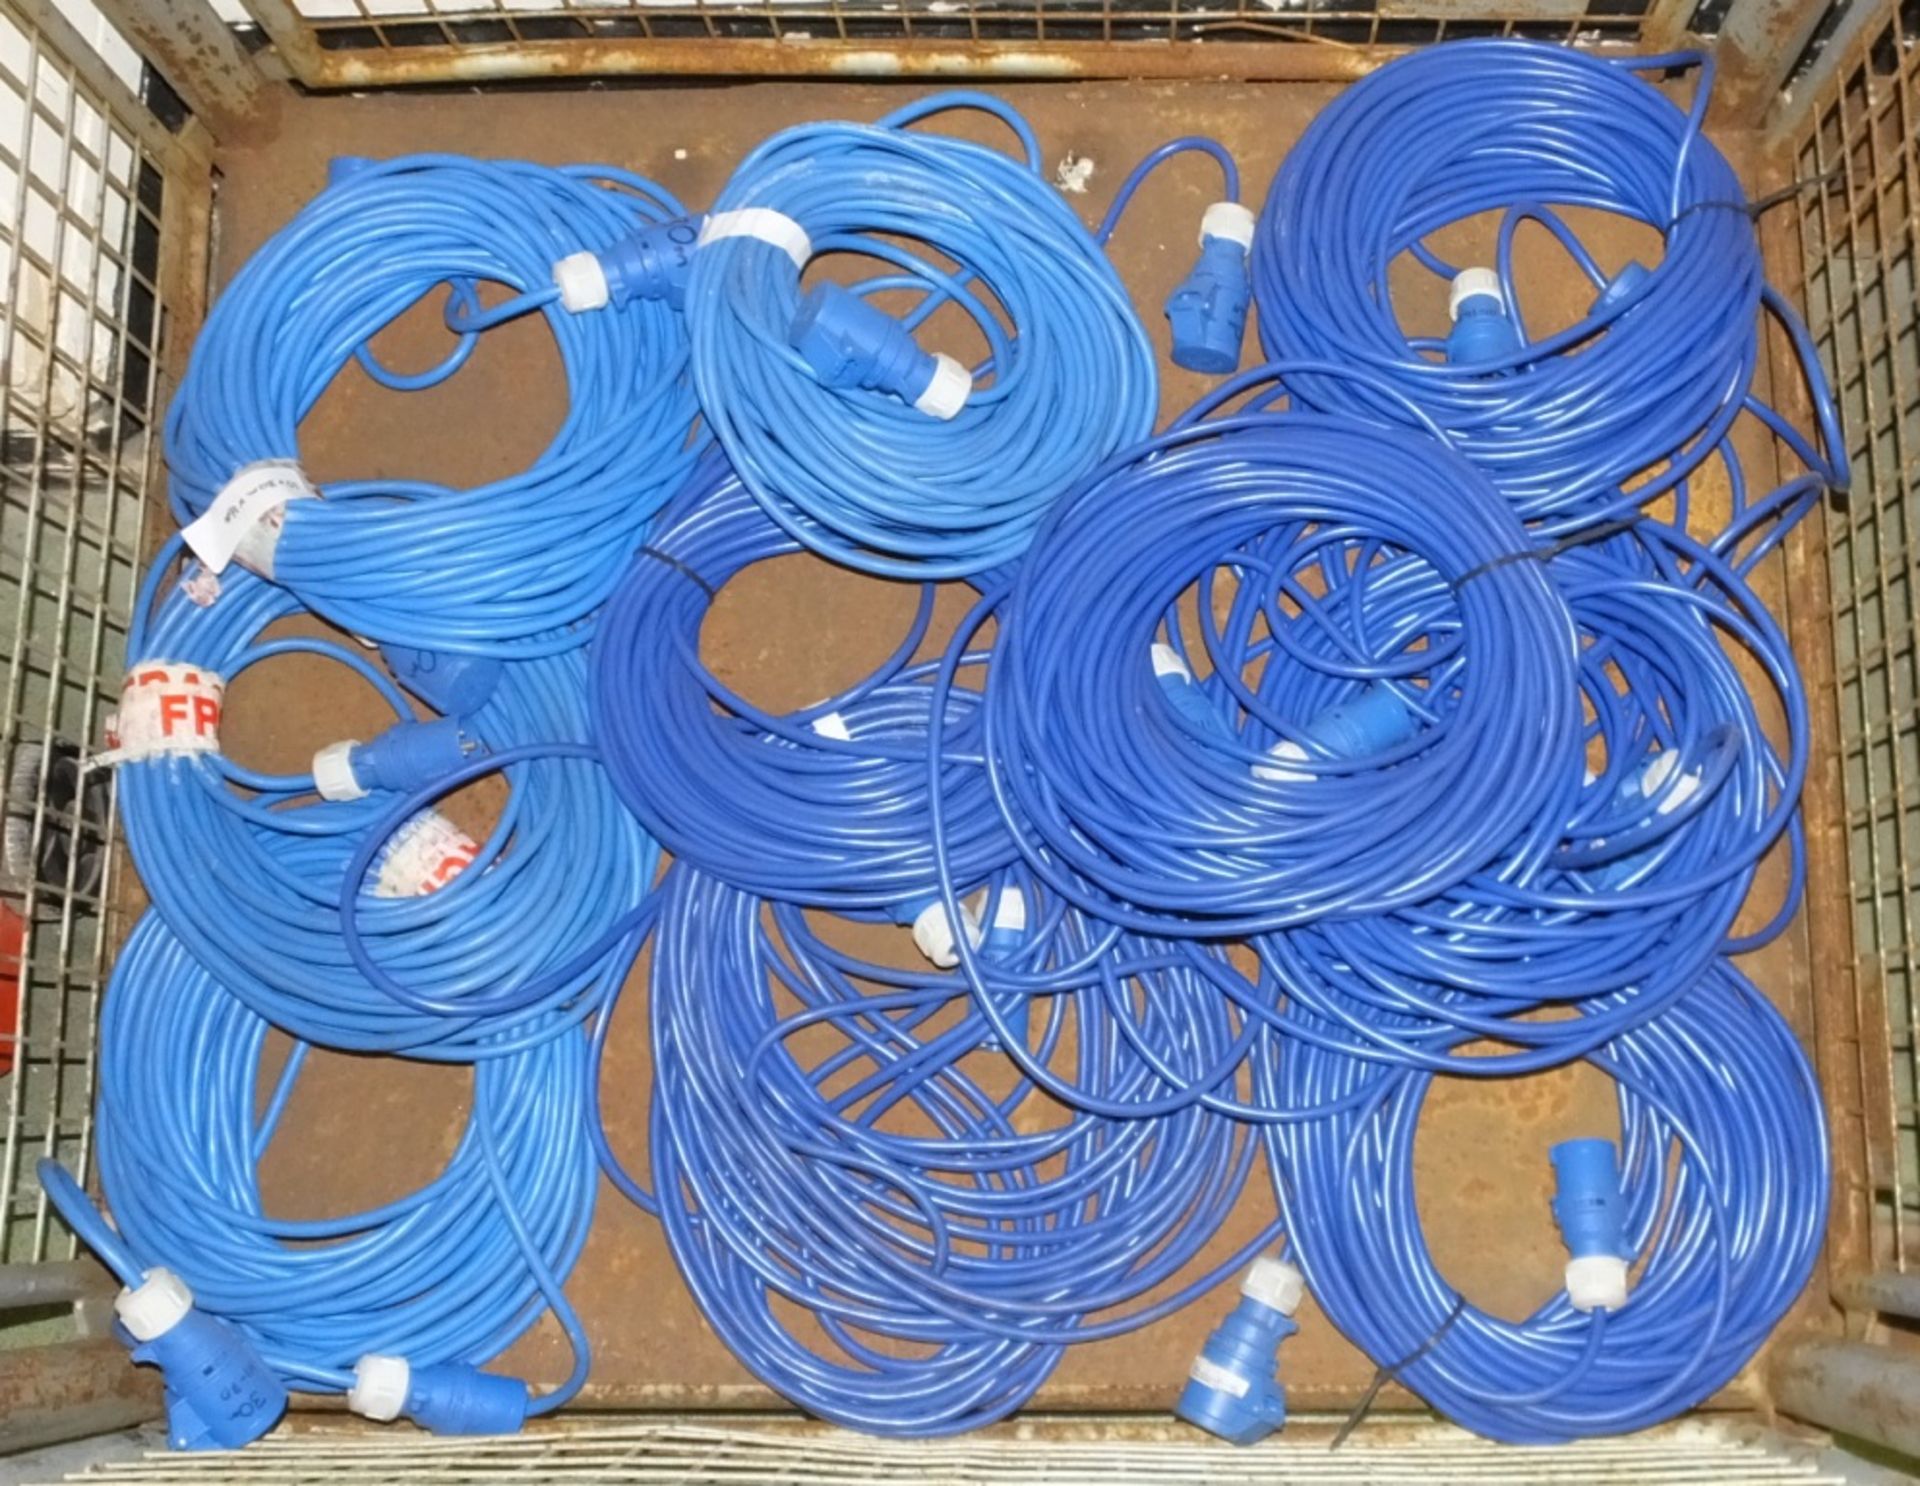 10x Cable Assemblies Blue - 30M x 16A